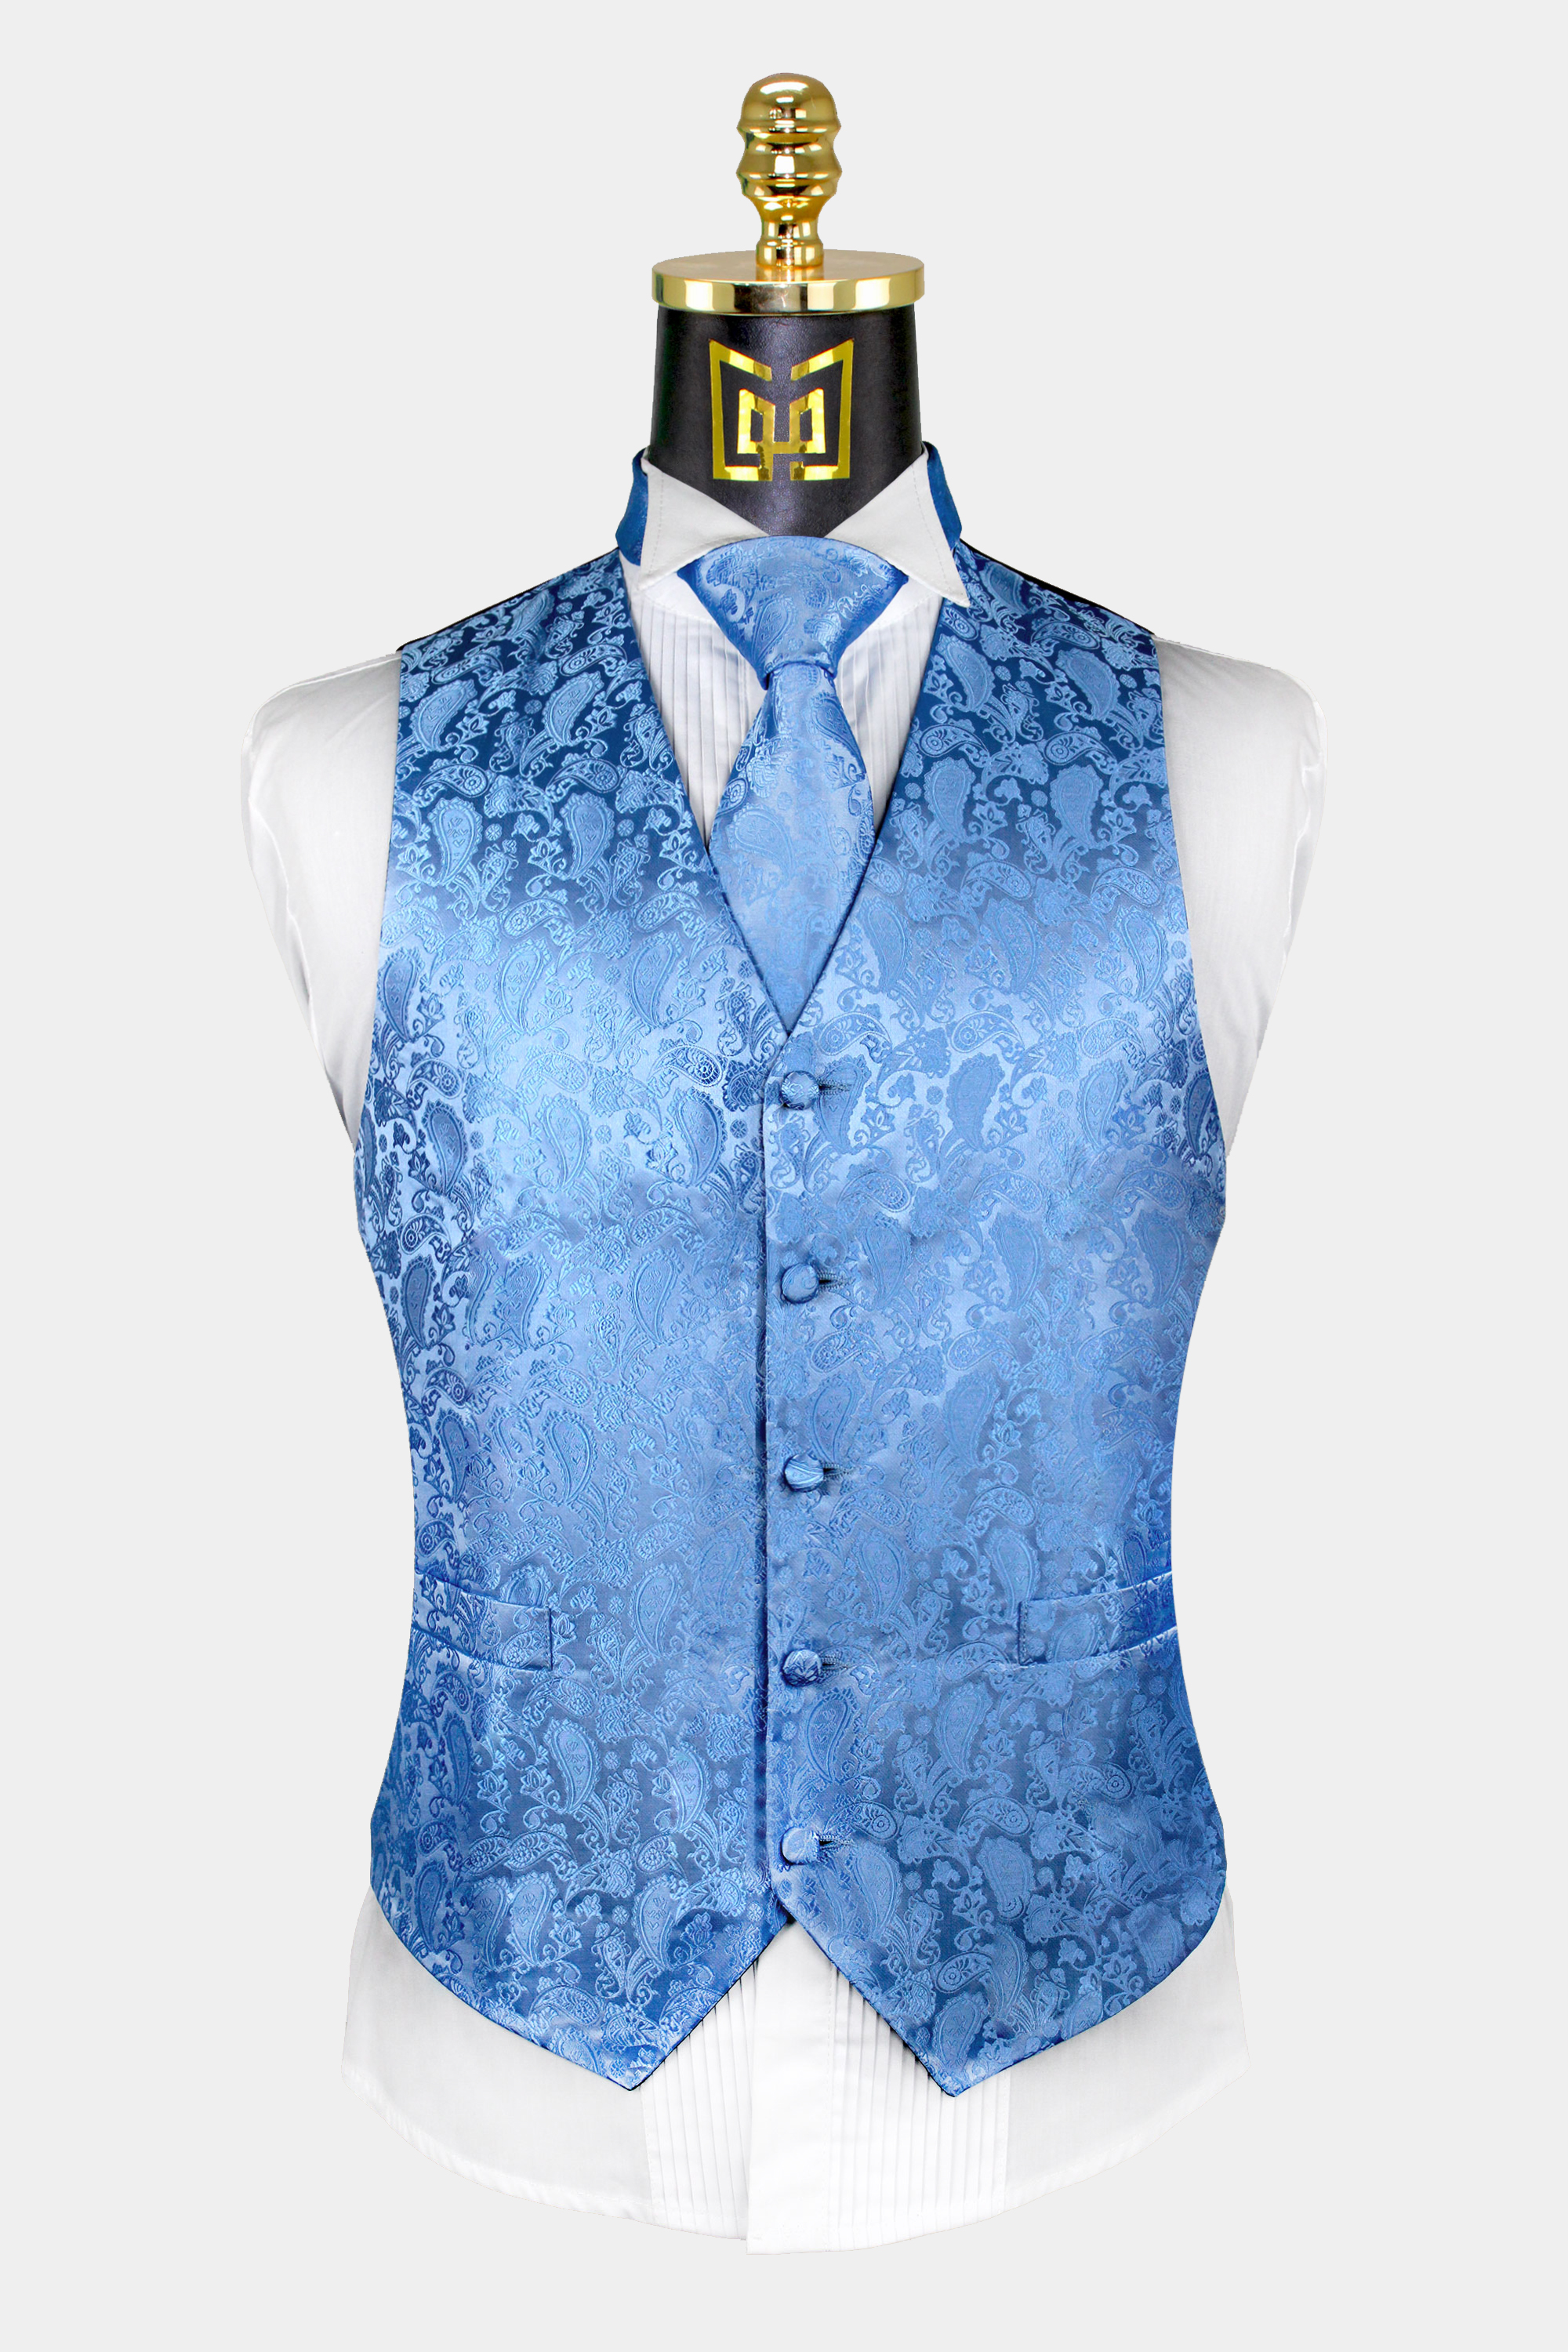 Light-Blue-Paisley-Vest-and-Tie-Set-Weding-Groom-TuxedoVest-Waistcoat-from-Gentlemansguru.com_